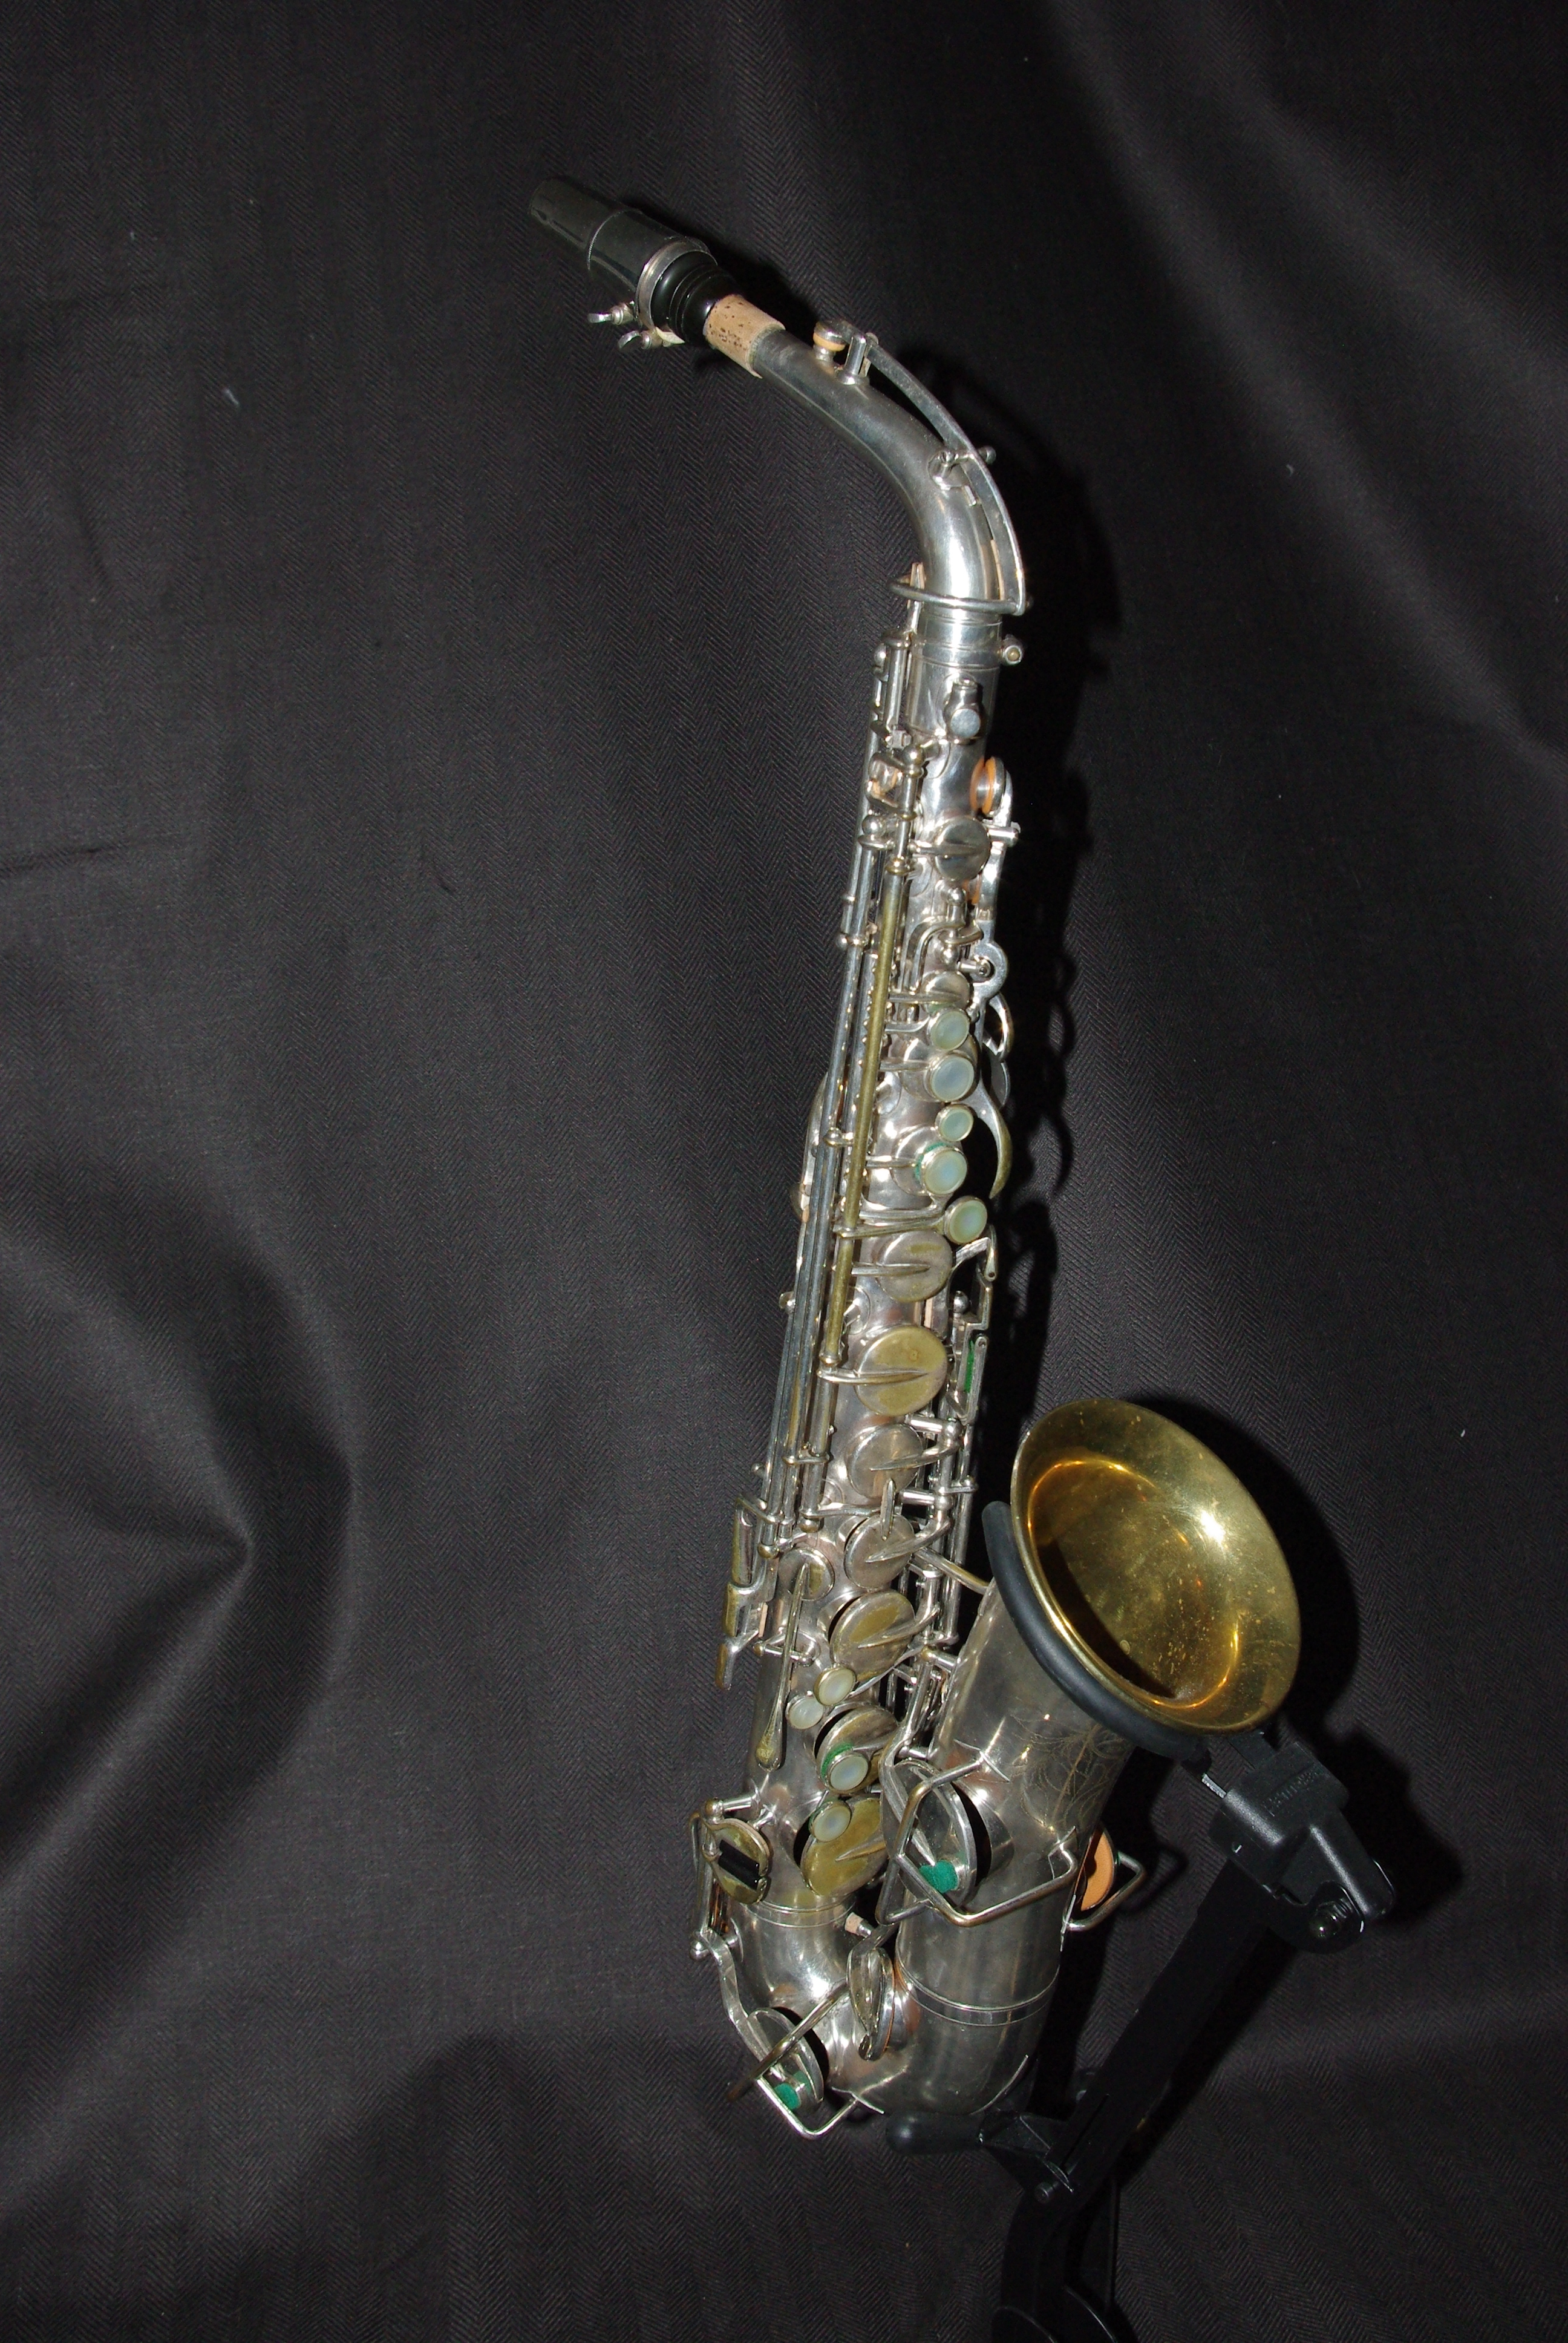 buescher elkhart saxophone serial numbers